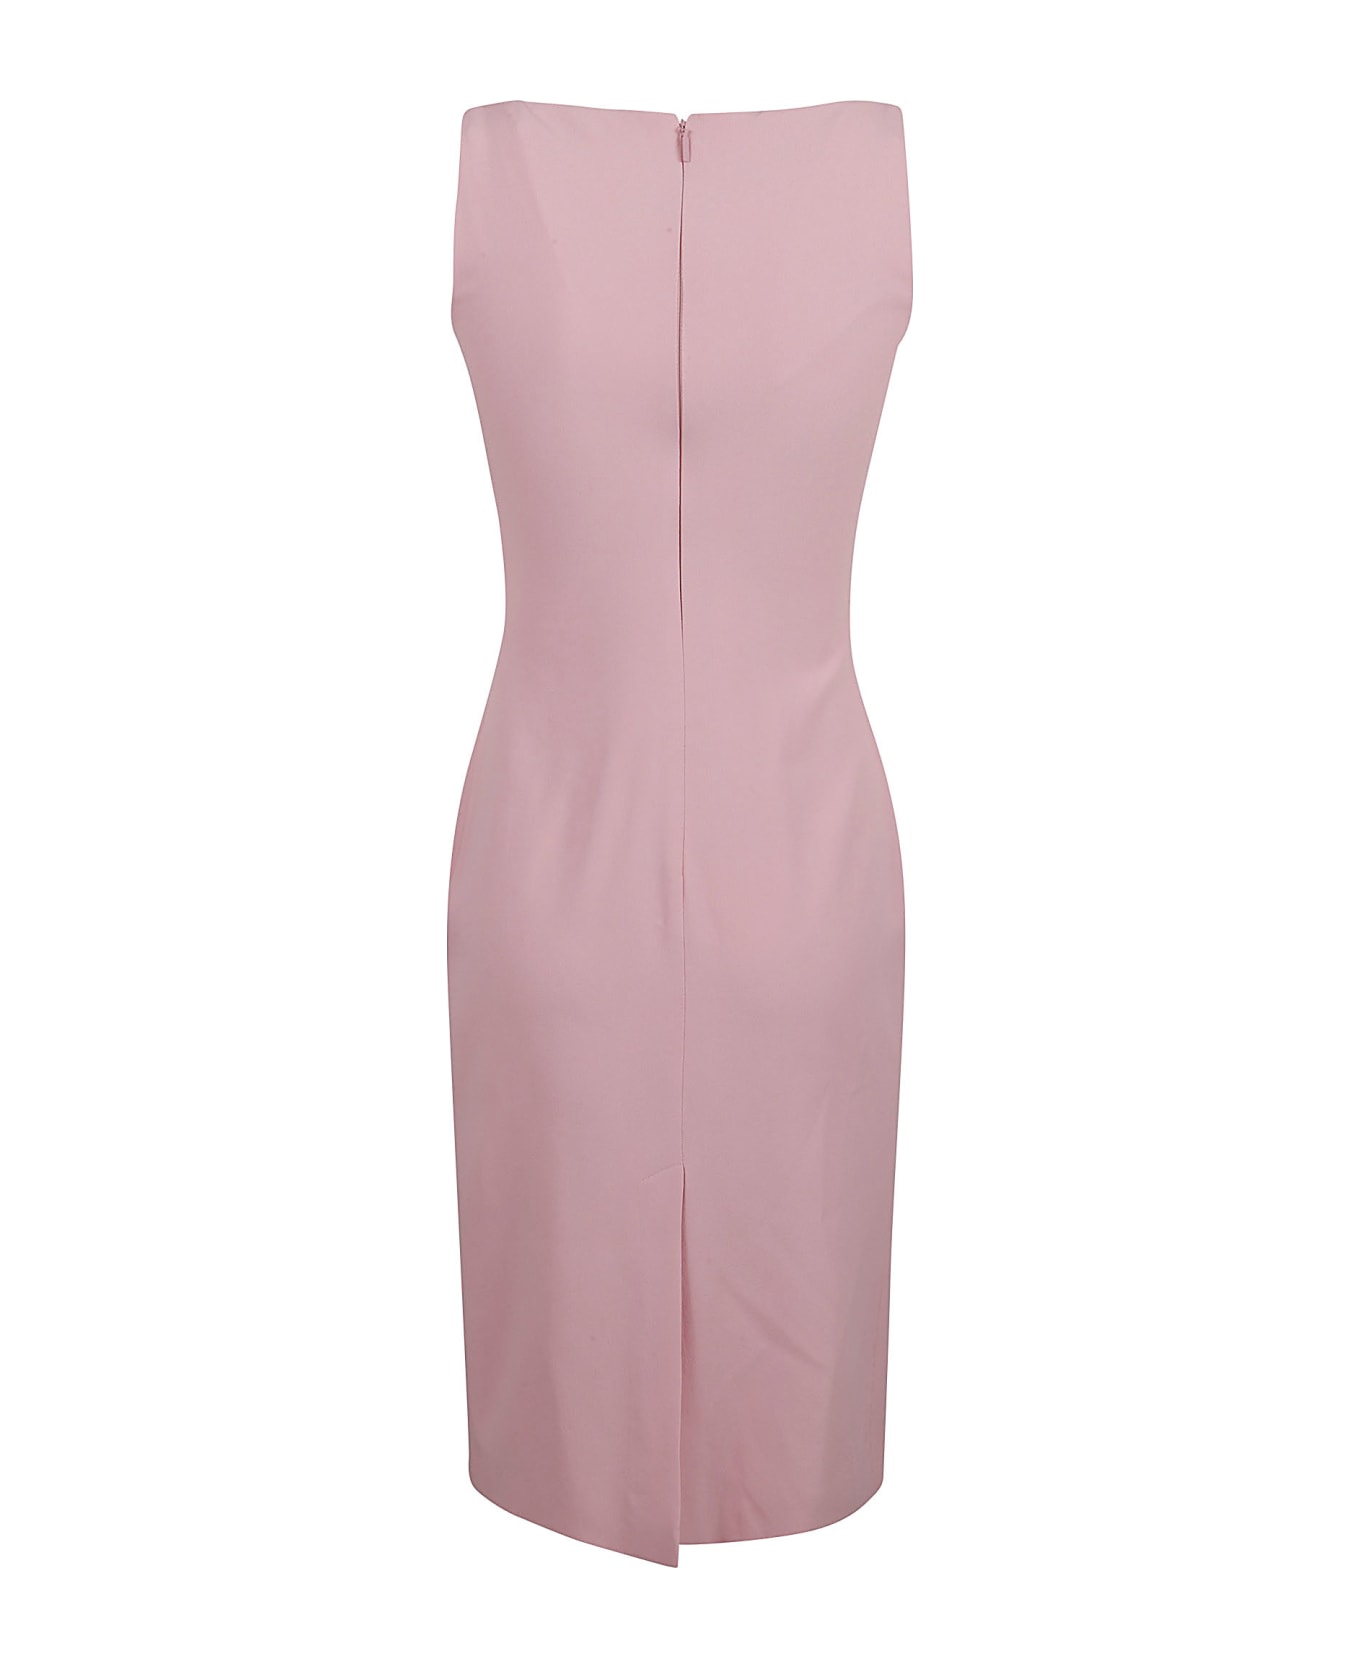 Versace Back Zip Sleeveless Dress - Pink